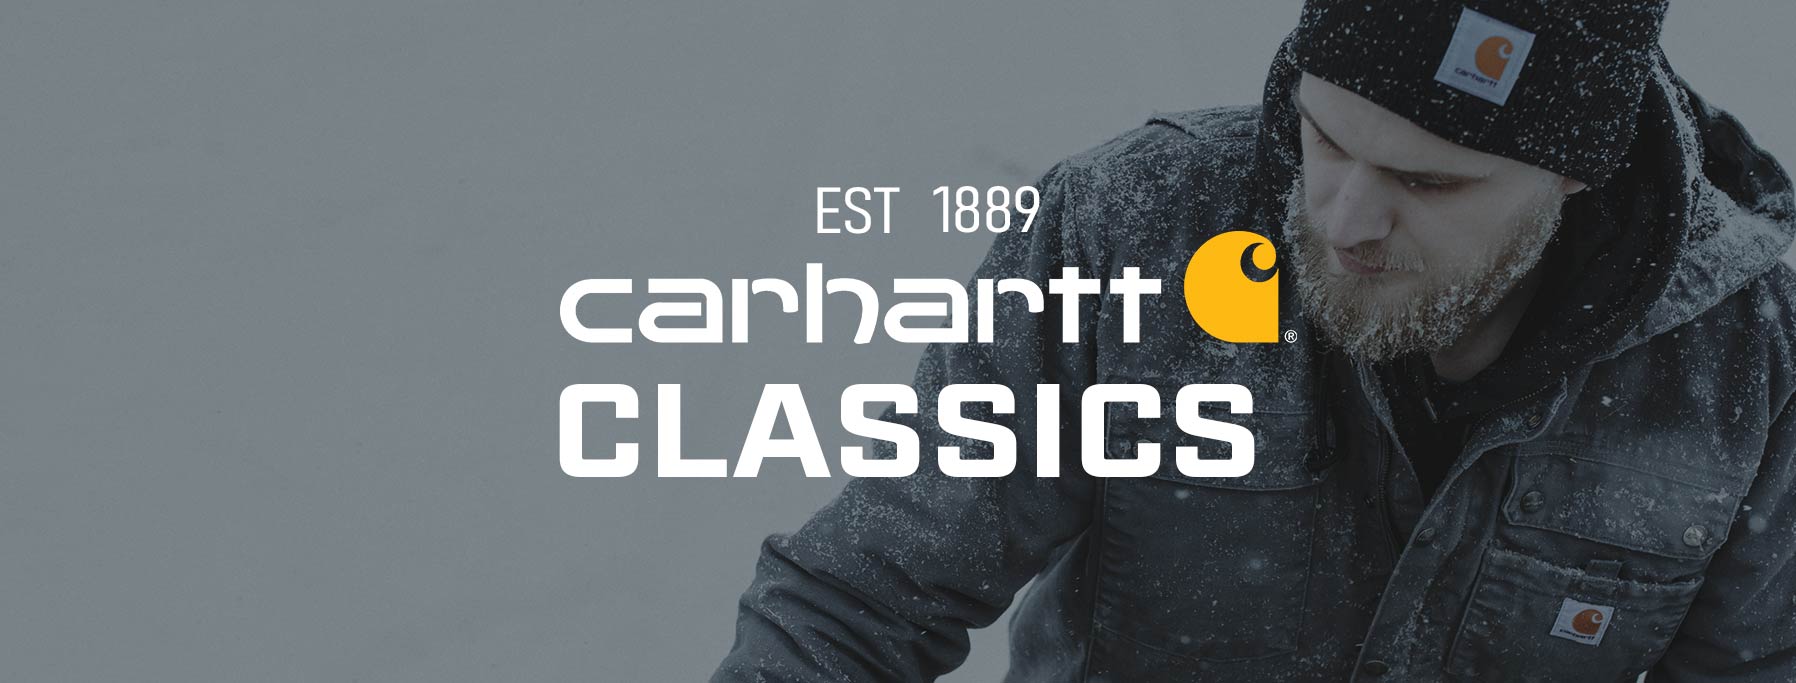 Carhartt Classics